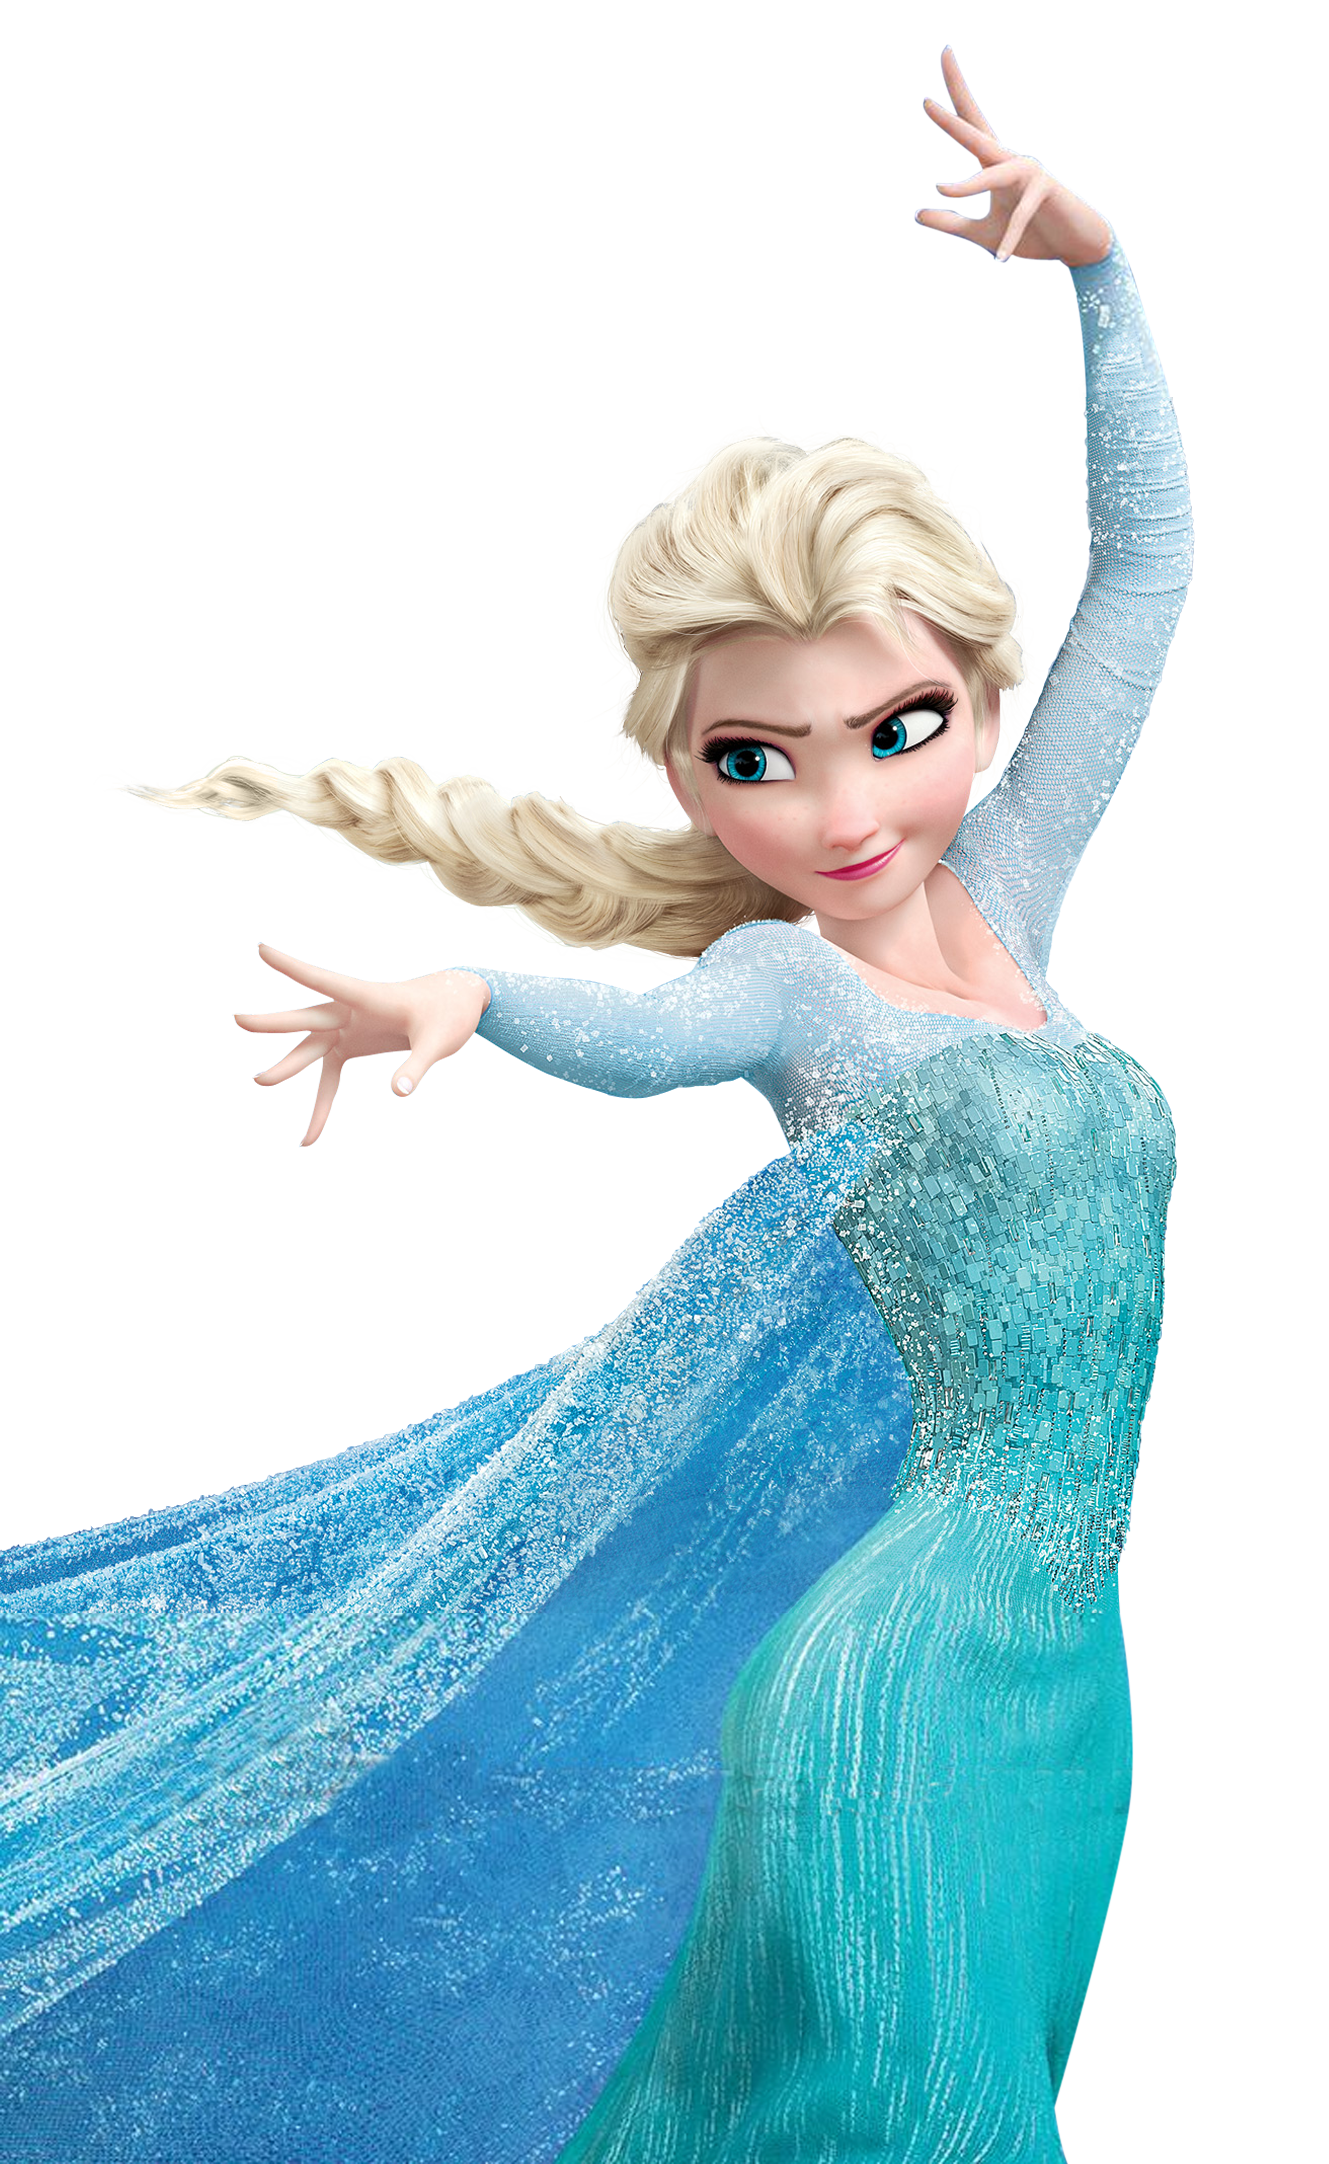 Download Elsa Frozen Anna Olaf Convite Frozen Fever Png Download 1329 2164 Free Transparent Elsa Png Download Clip Art Library SVG, PNG, EPS, DXF File